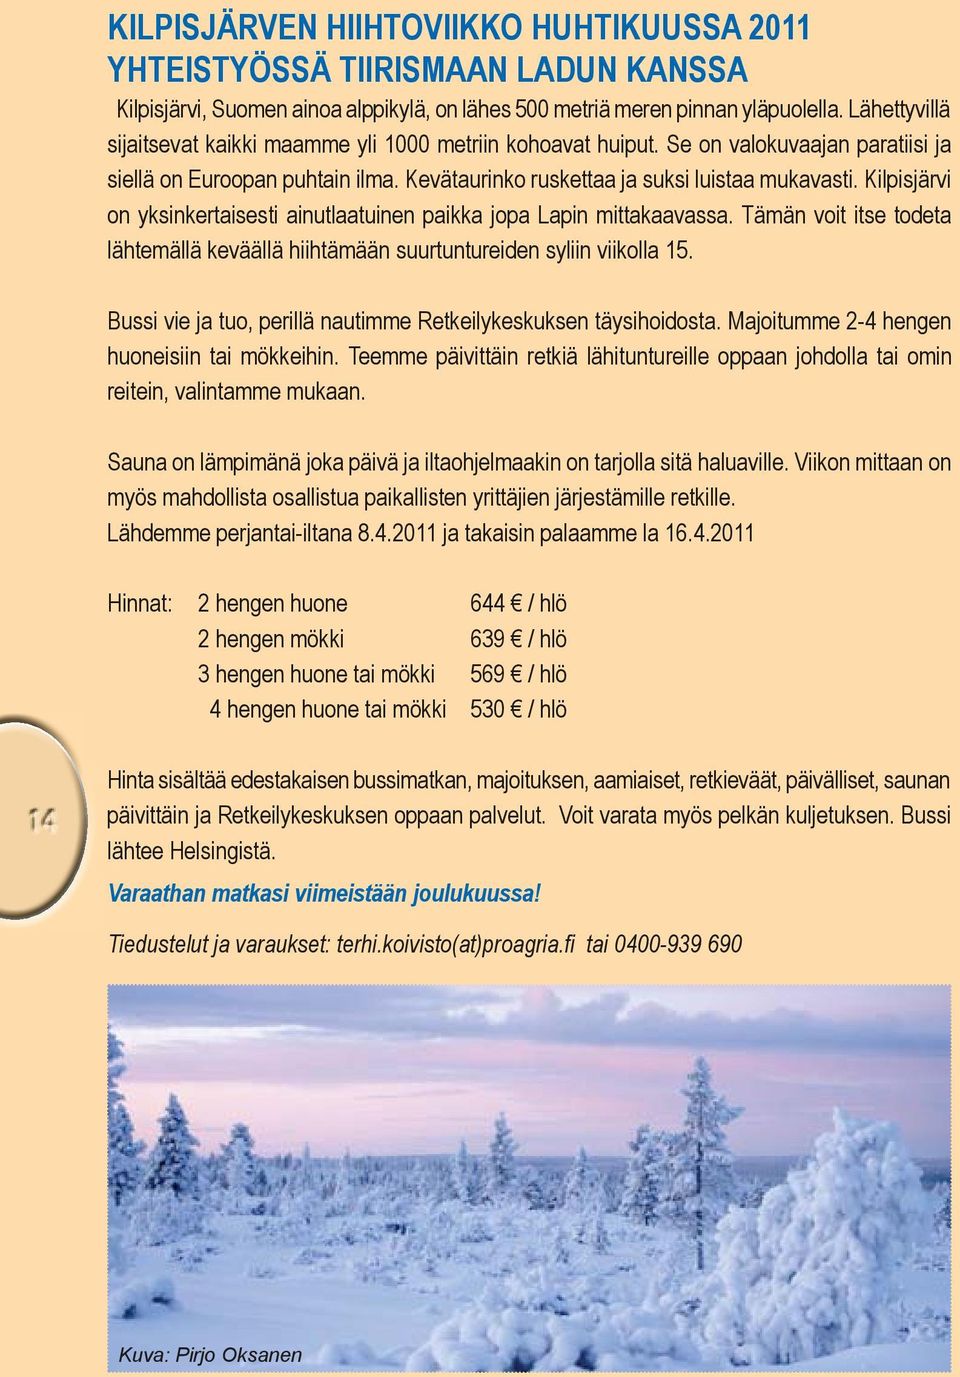 Kilpisjärvi on yksinkertaisesti ainutlaatuinen paikka jopa Lapin mittakaavassa. Tämän voit itse todeta lähtemällä keväällä hiihtämään suurtuntureiden syliin viikolla 15.